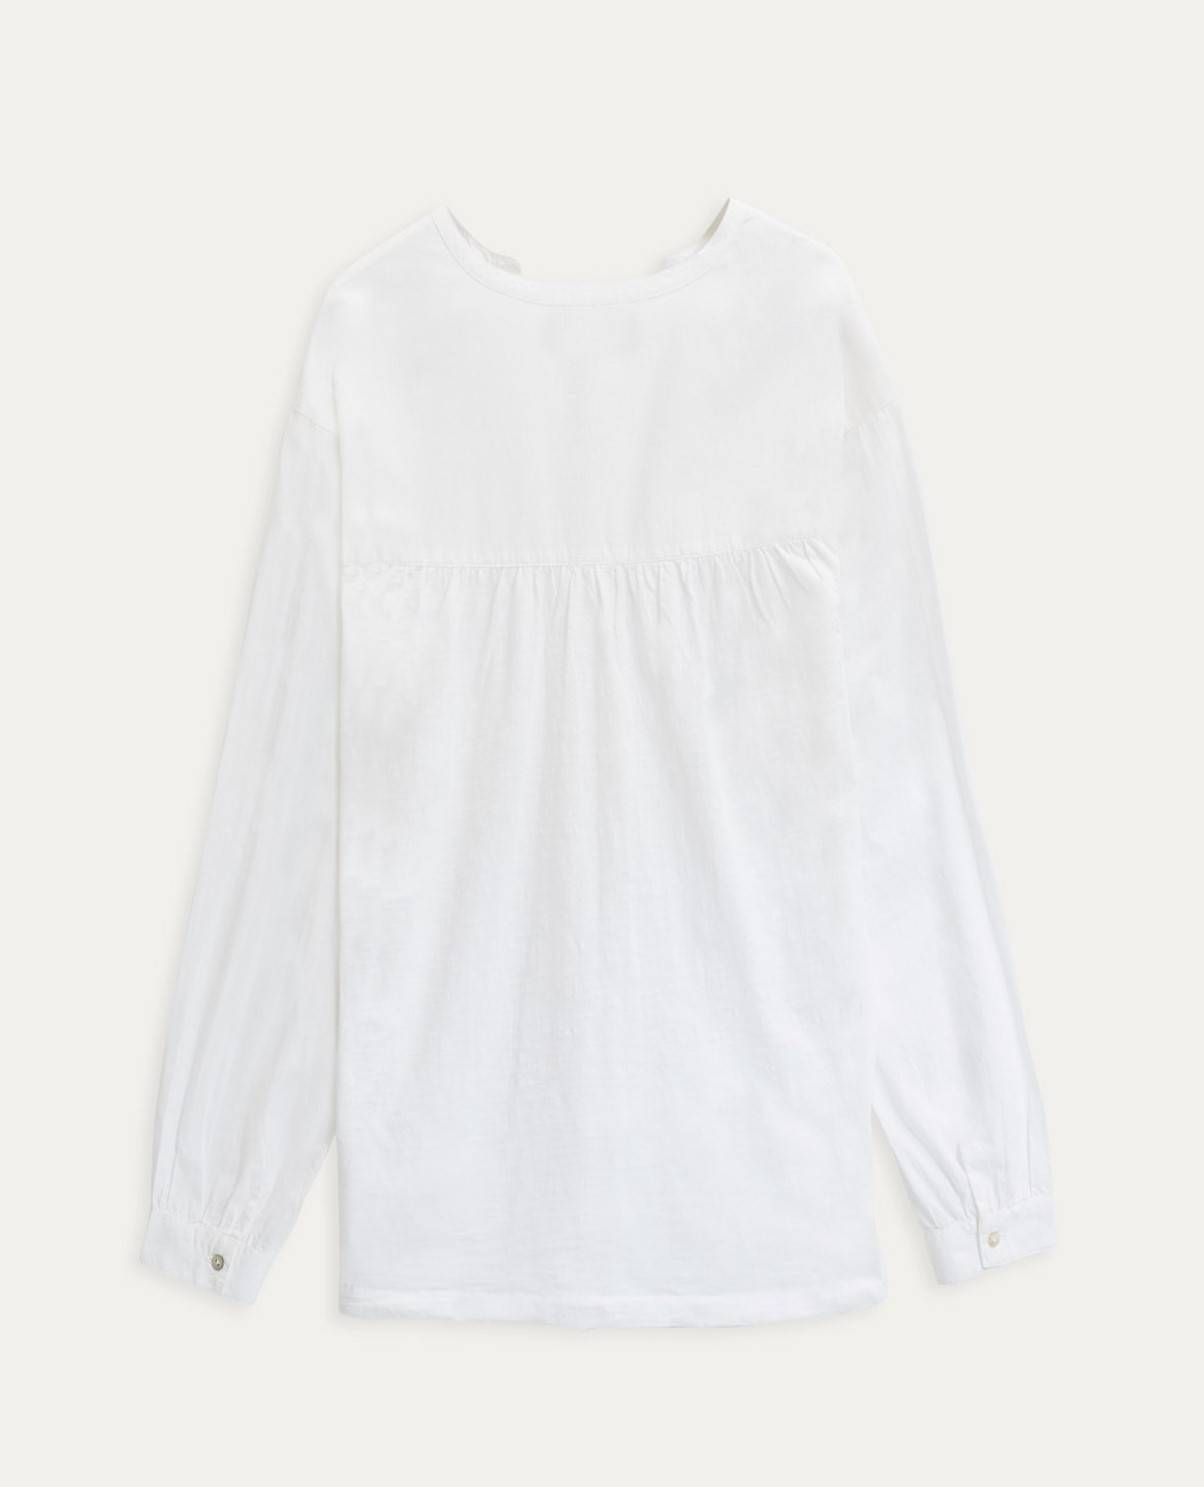 Camisa de la marca Yerse modelo 38026 en color blanco. Camisa de manga larga y cuello mao. Tejido en algodón orgánico. Detalle de bolsillo y fruncido en el bajo.